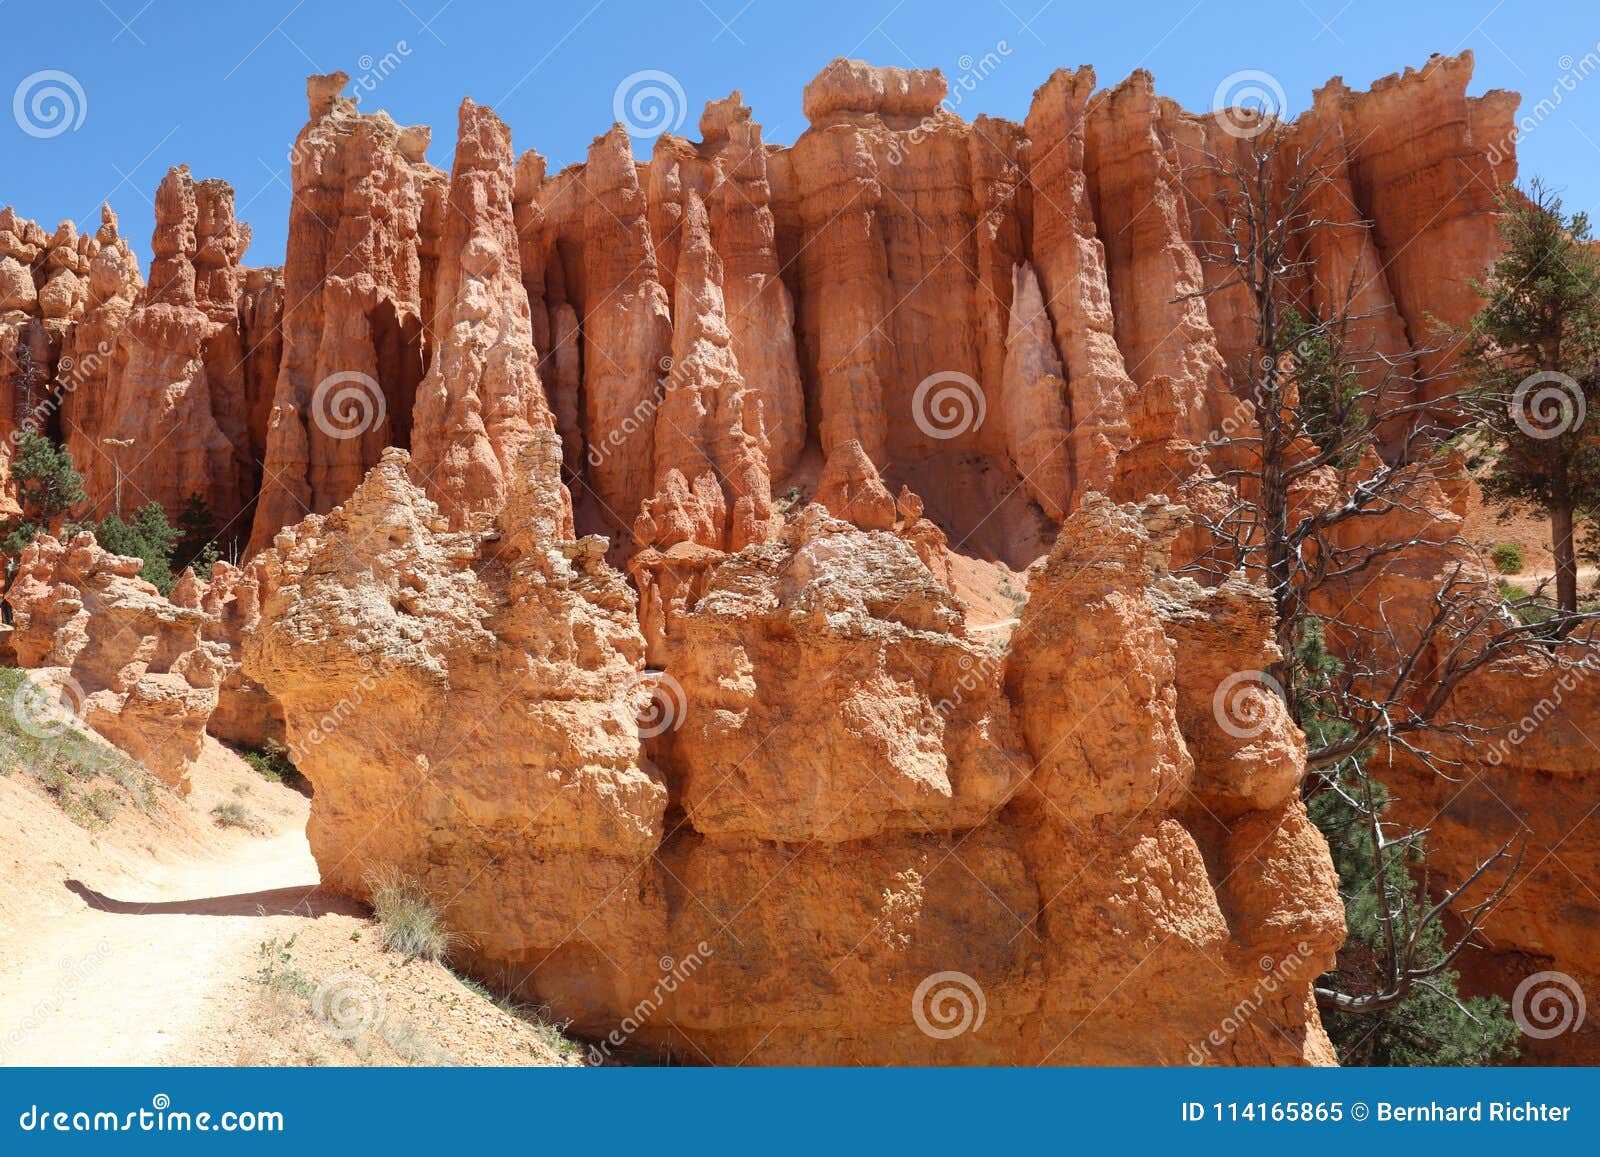 rock hoodoos in bryce canyon national park in utah